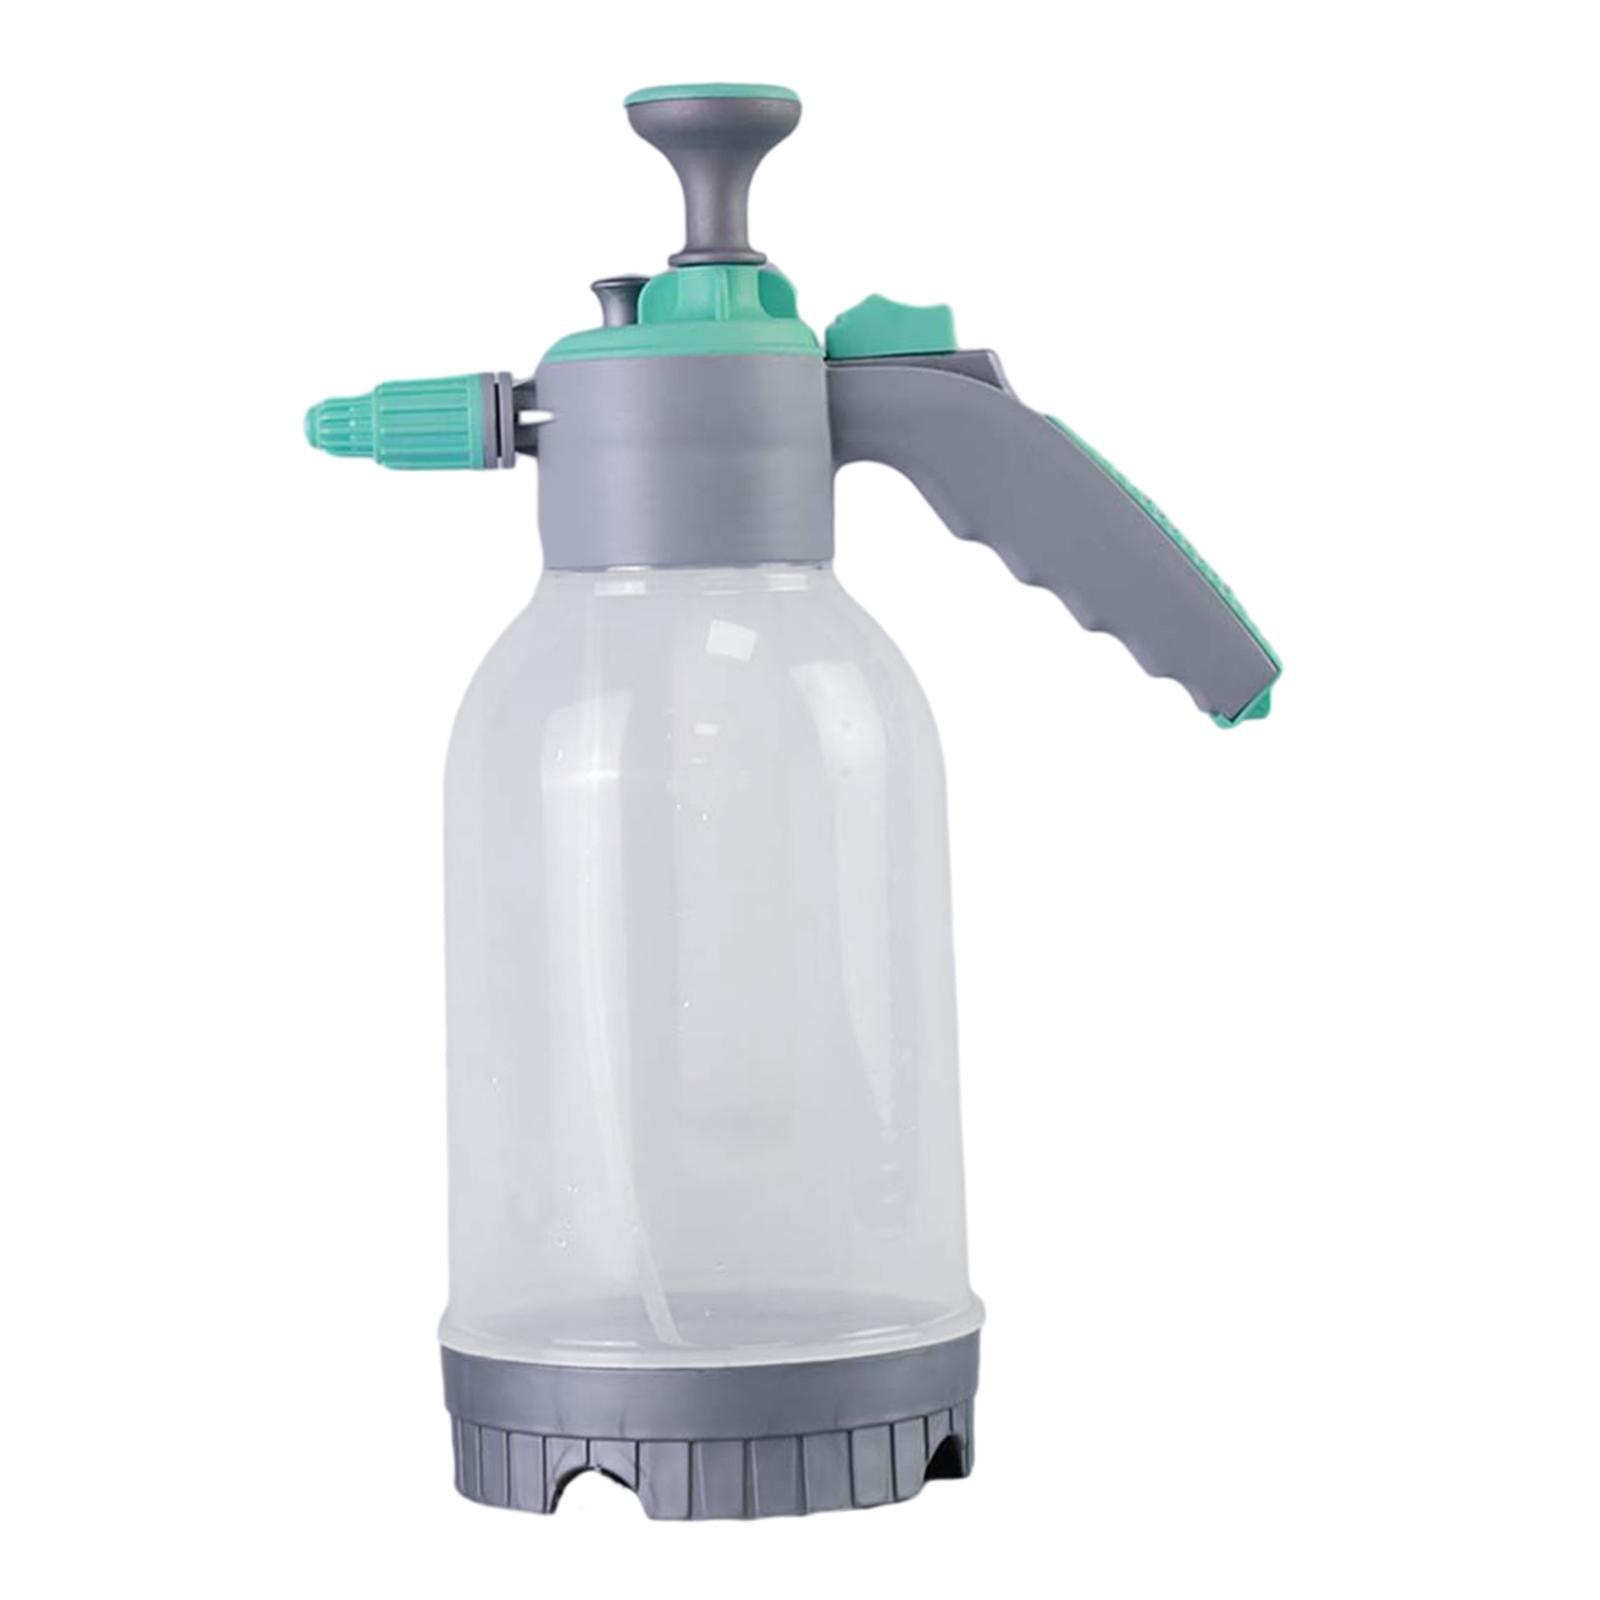 2L Hand Pump Pressure Garden Spray Bottle Handheld Sprayer at Rs 140 in  Surat